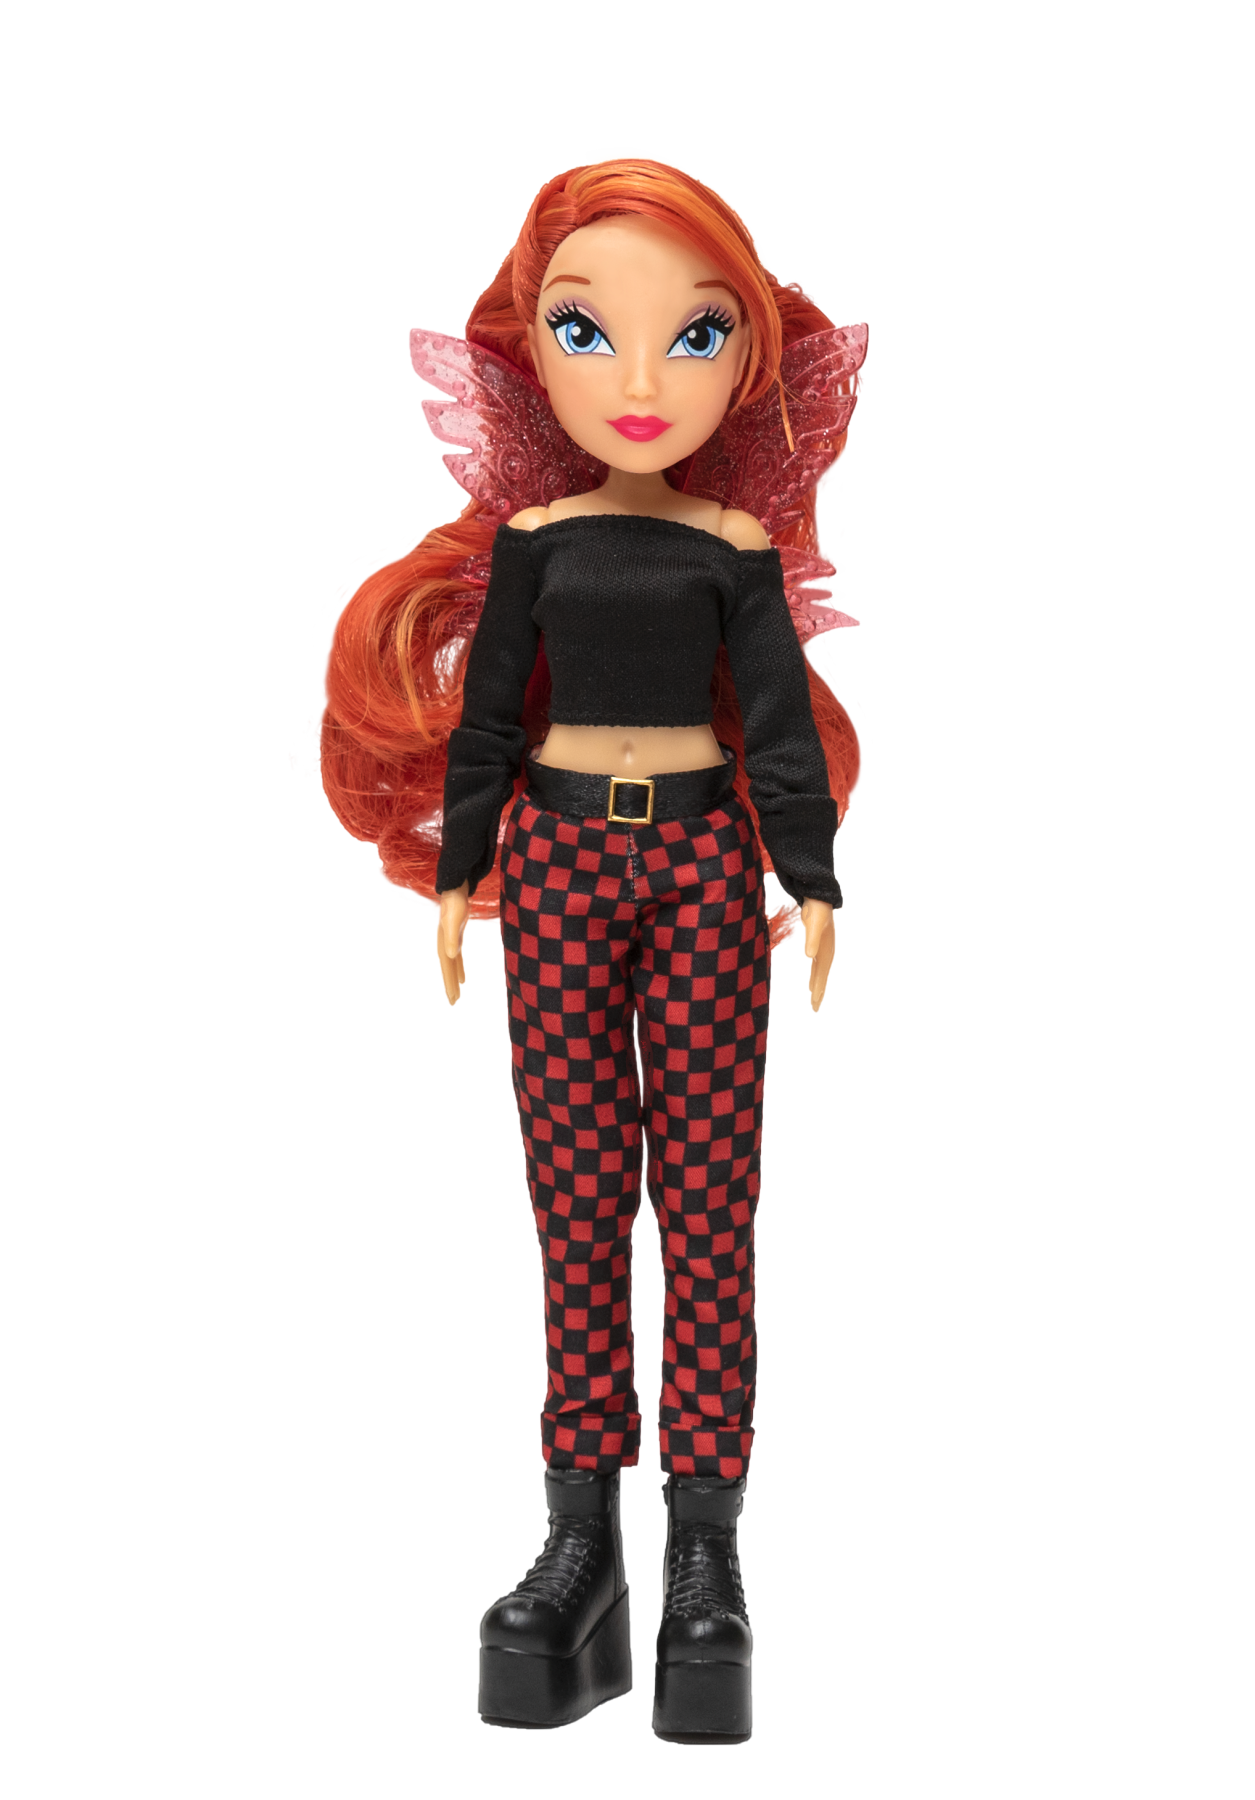 Winx doll - bambola fashion doll personaggio bloom alta cm 23 - WINX